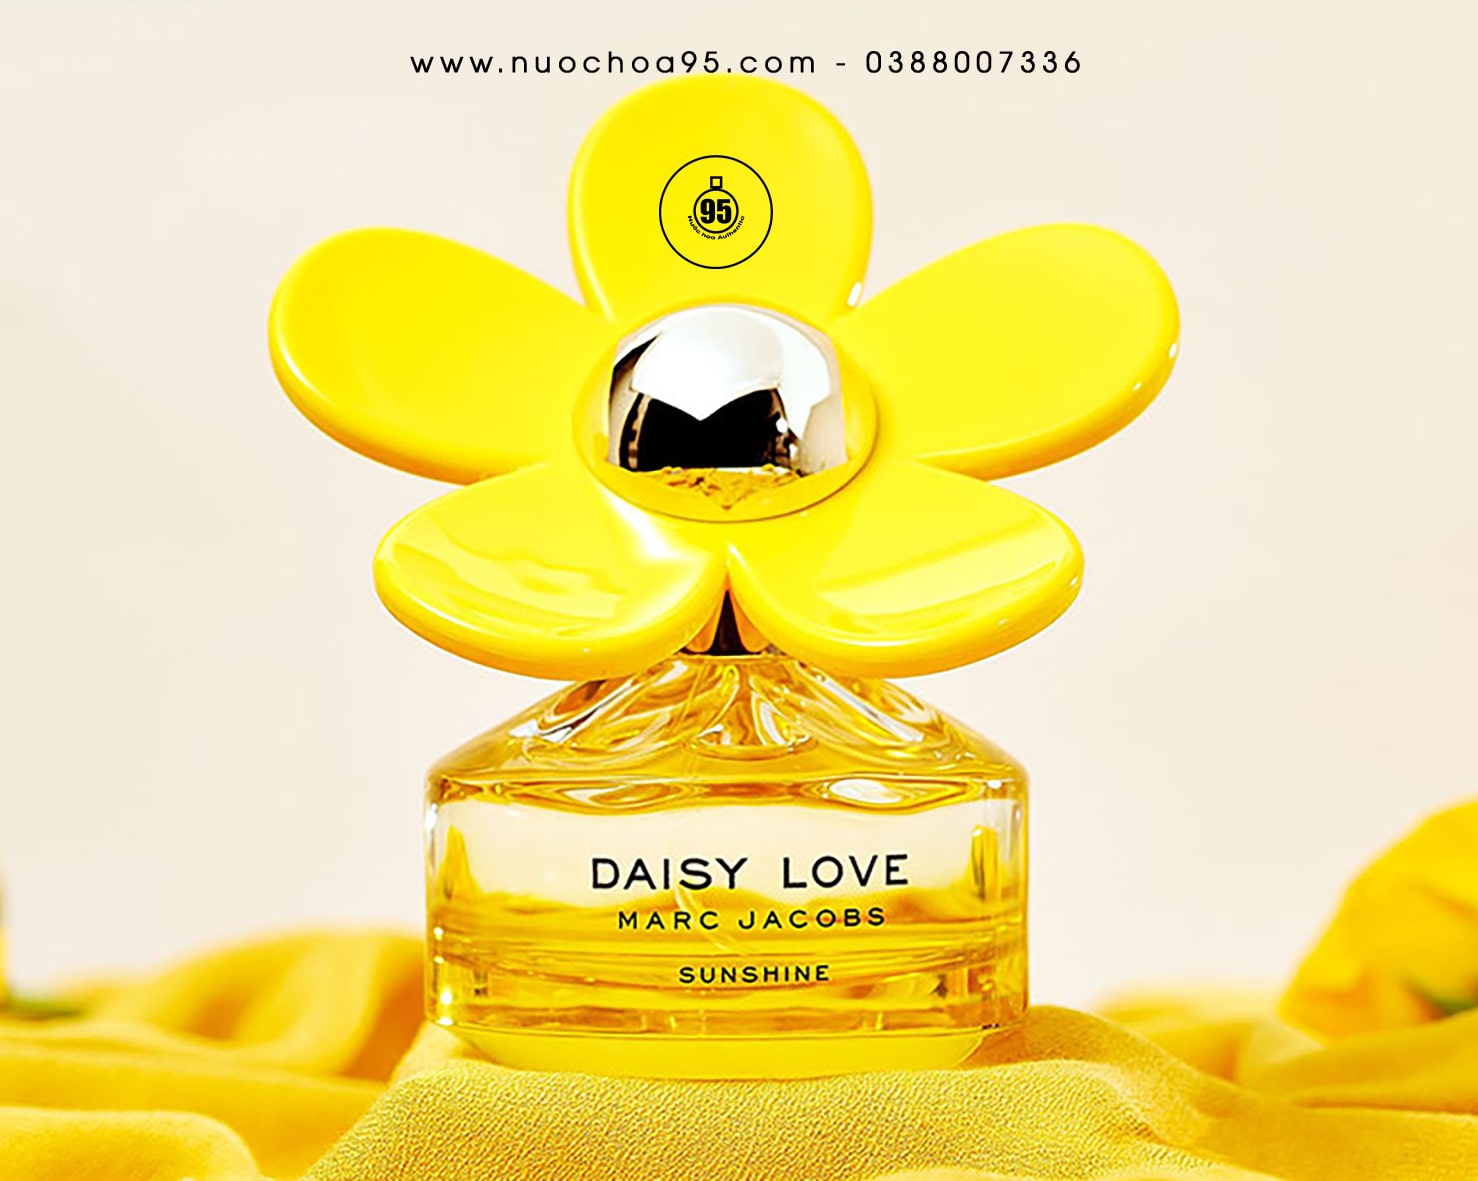 Nước hoa Marc Jacobs Daisy Love Sunshine - Ảnh 3